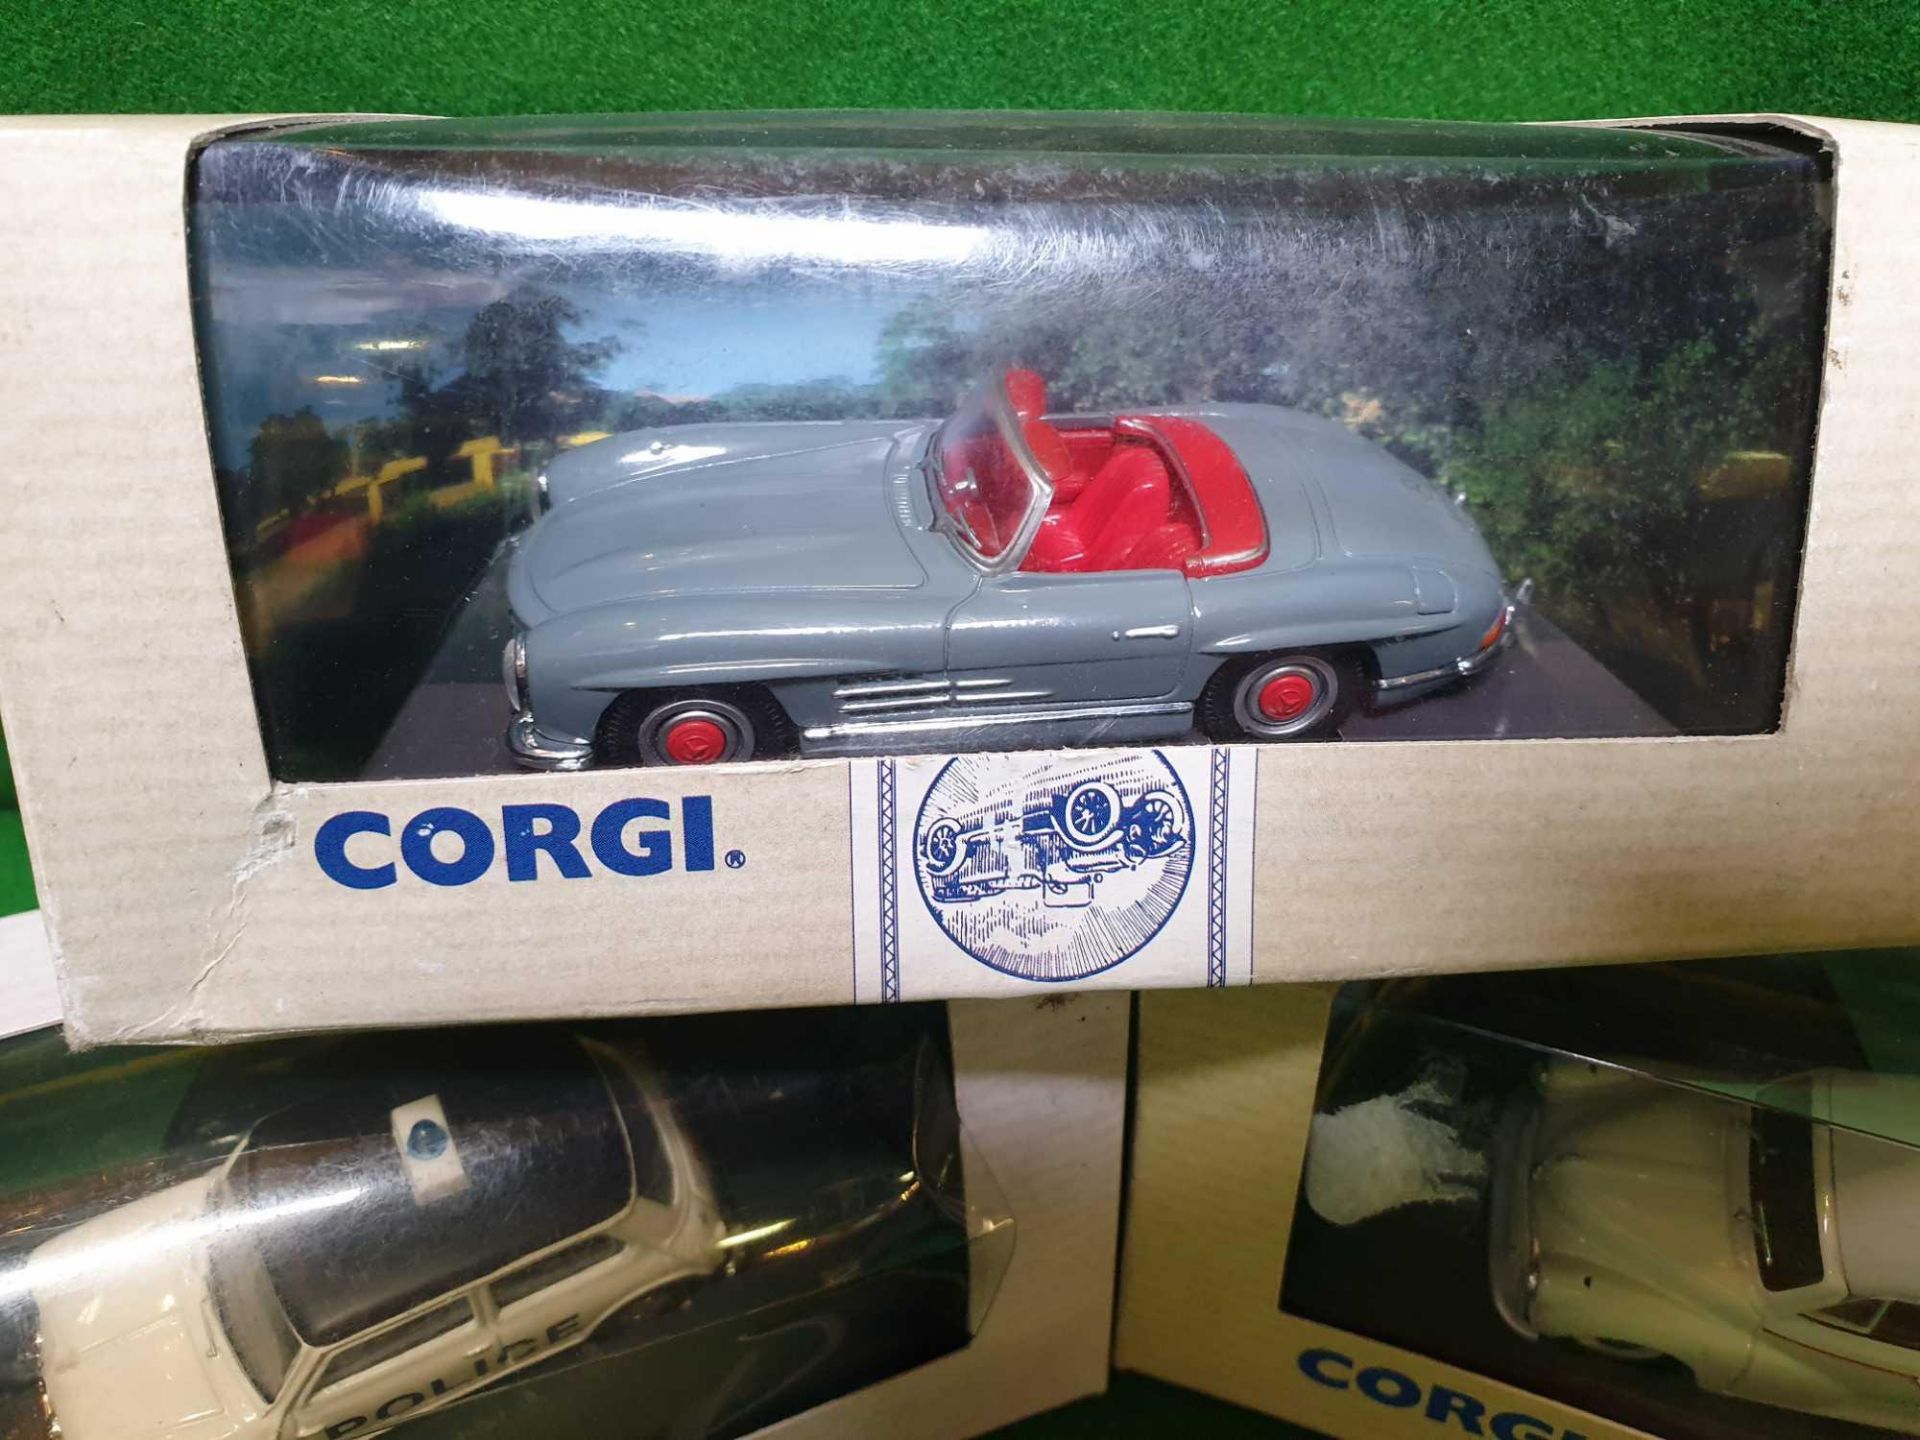 A Set Of 3 X Corgi Classic Vehicles Diecast Models Comprising Of #96750 Corgi Morris Minor - Image 2 of 4